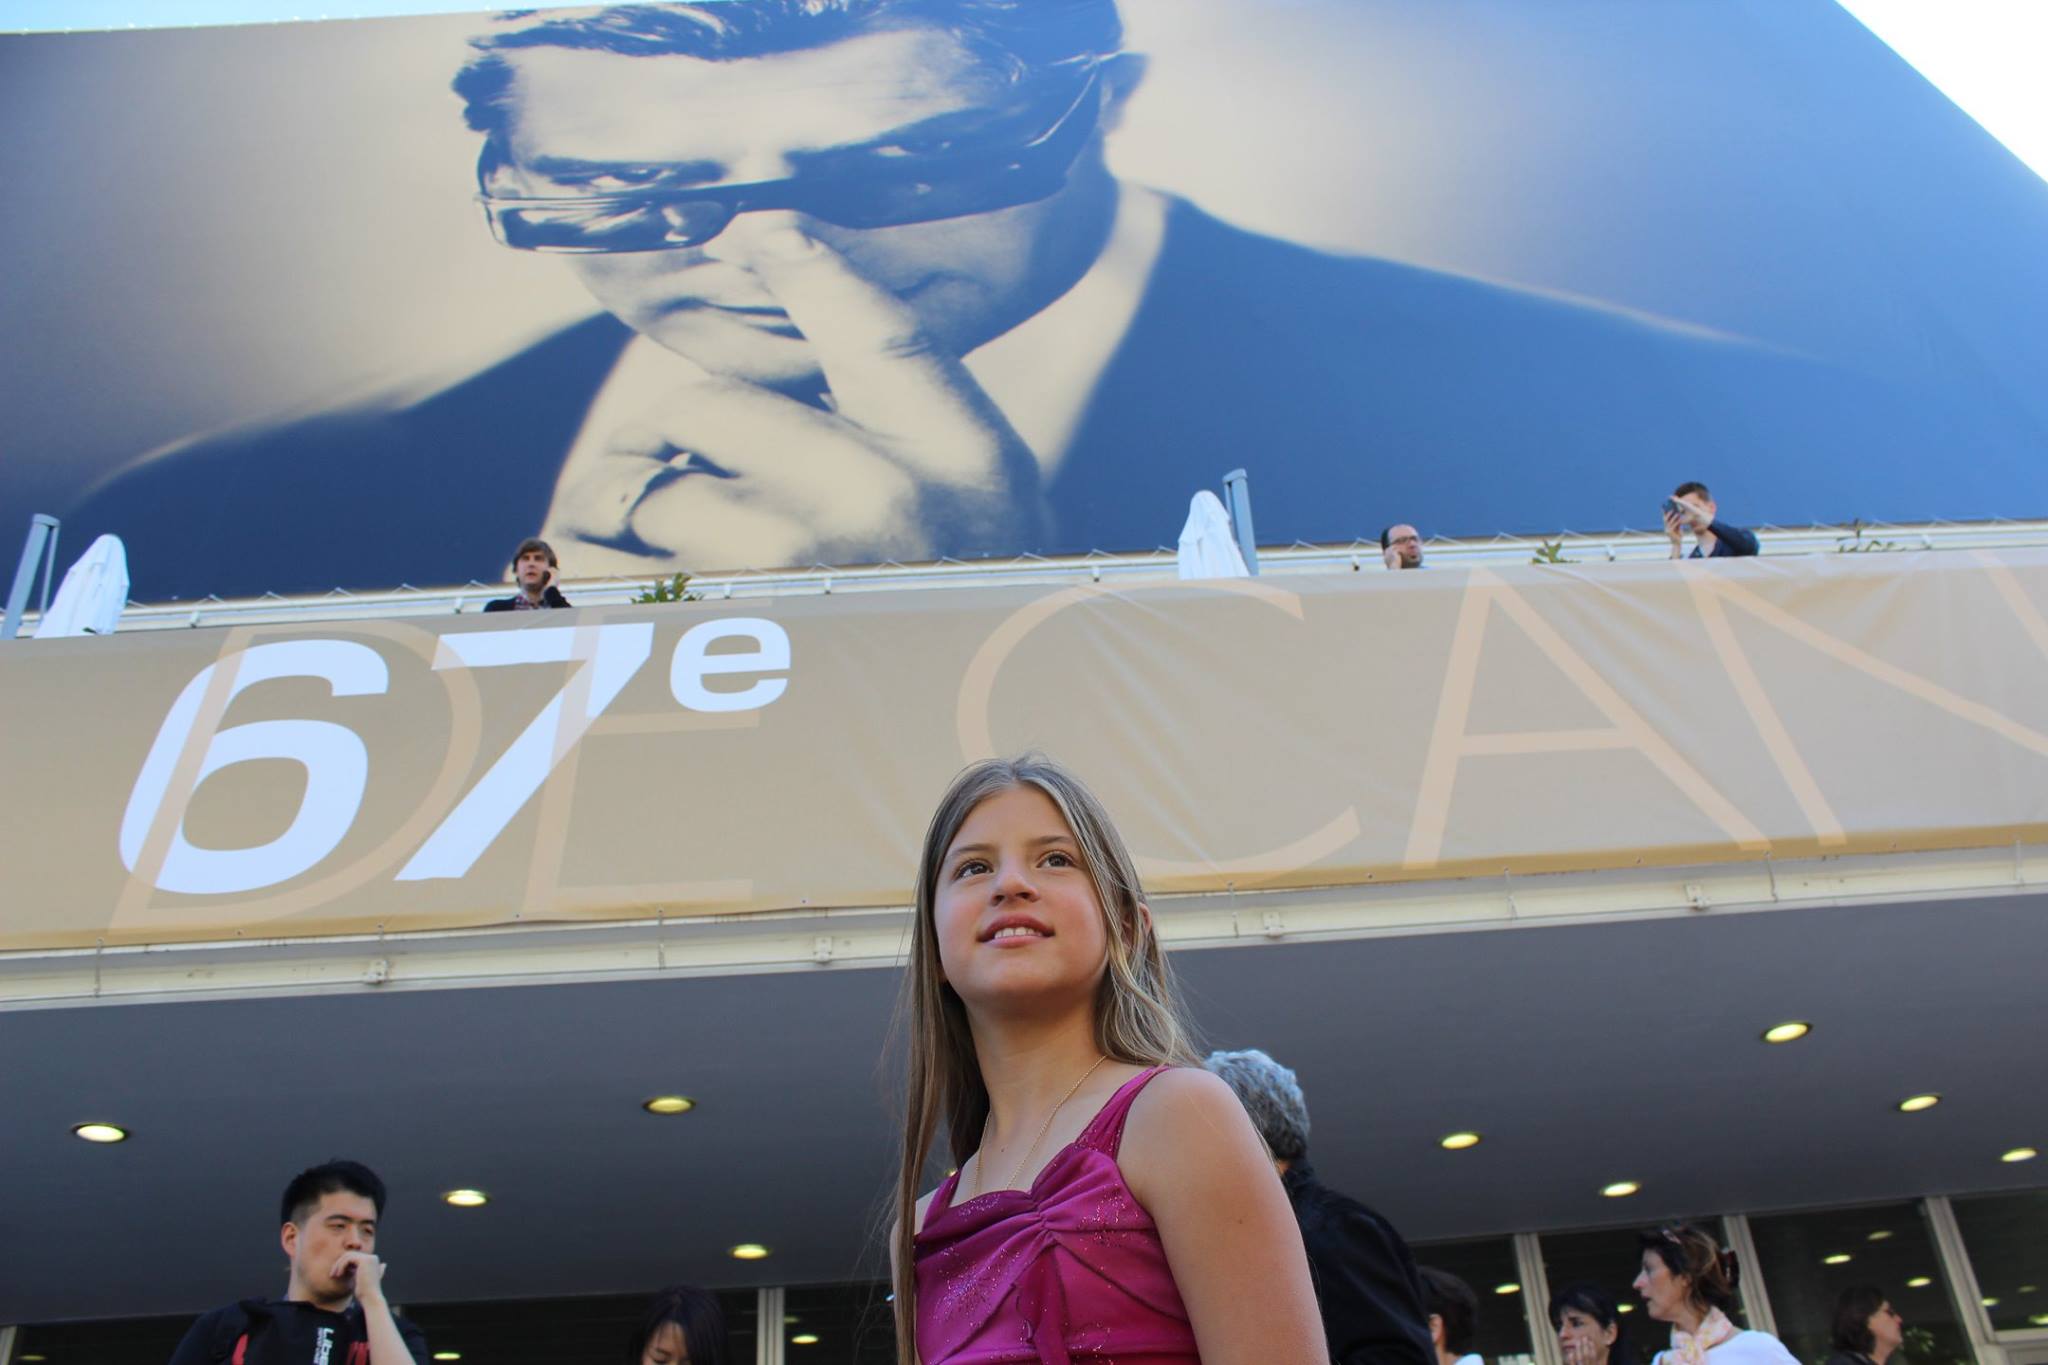 67th Festival de Cannes. 2014